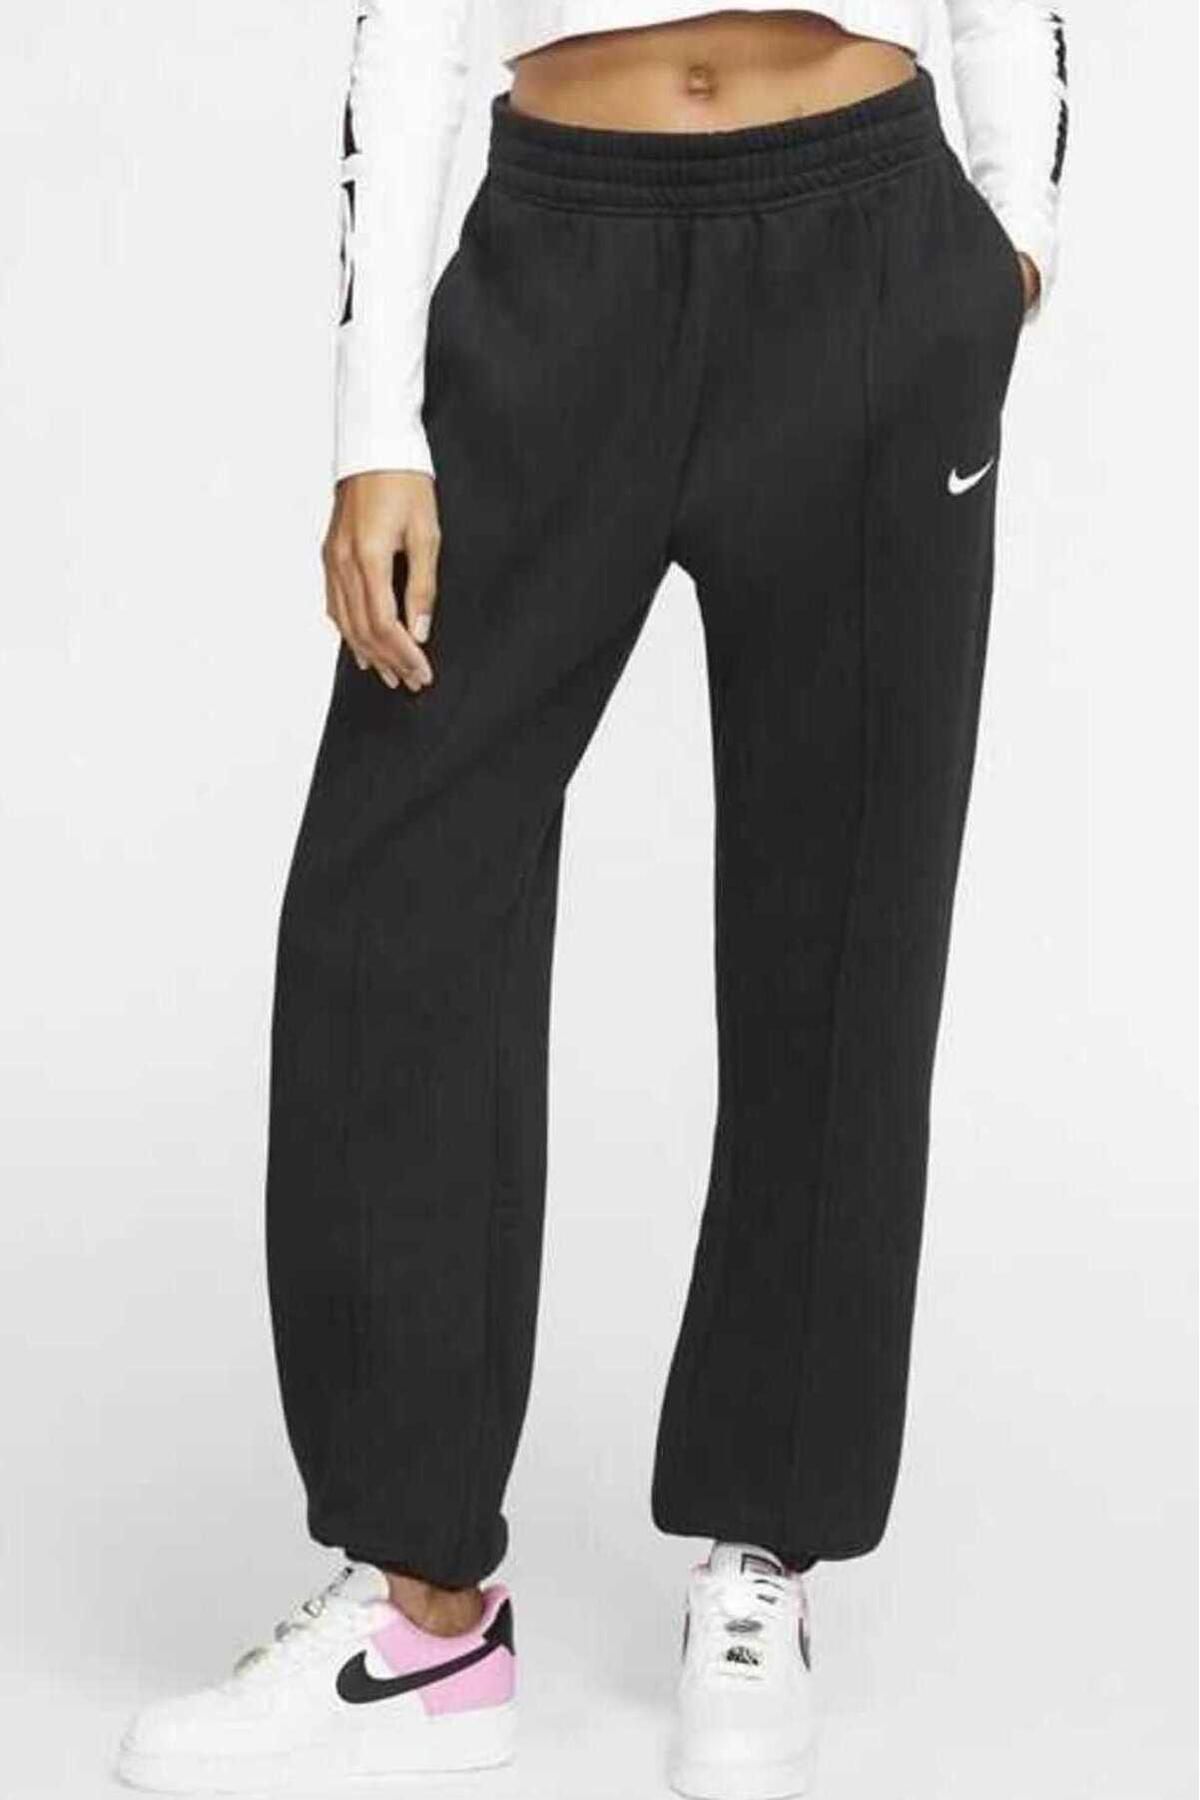 Nike Sportswear Esst. Collection Normal Belli Bol Kesim Siyah Kadın Eşofman Altı